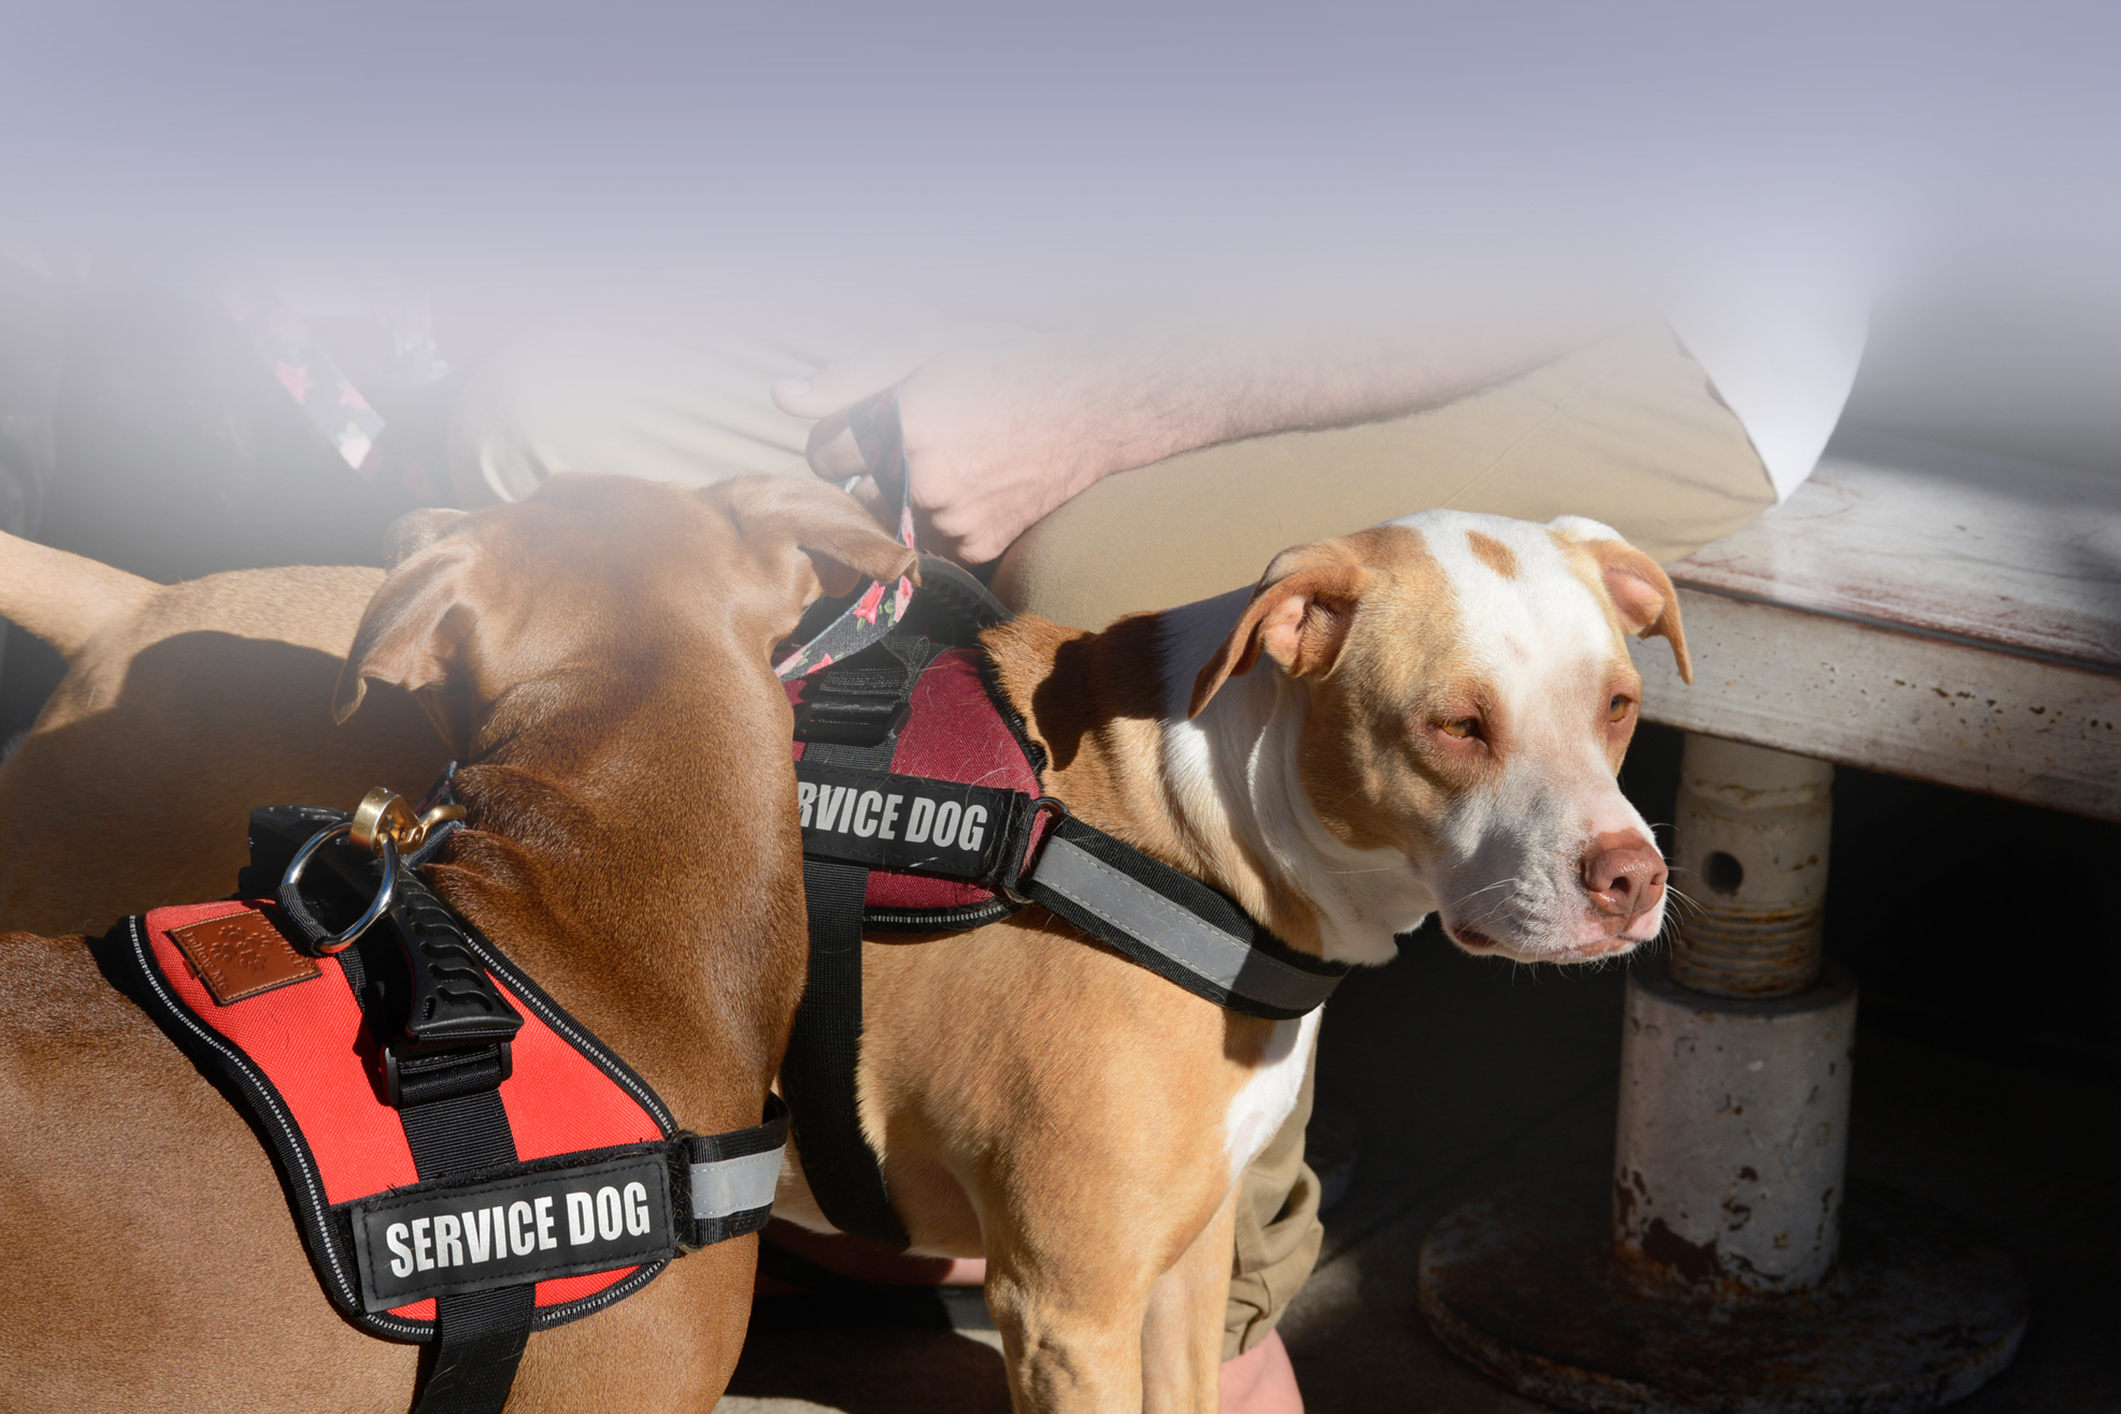 Service Dog Vests | Service Dog ID Cards | Service Dog Certificates